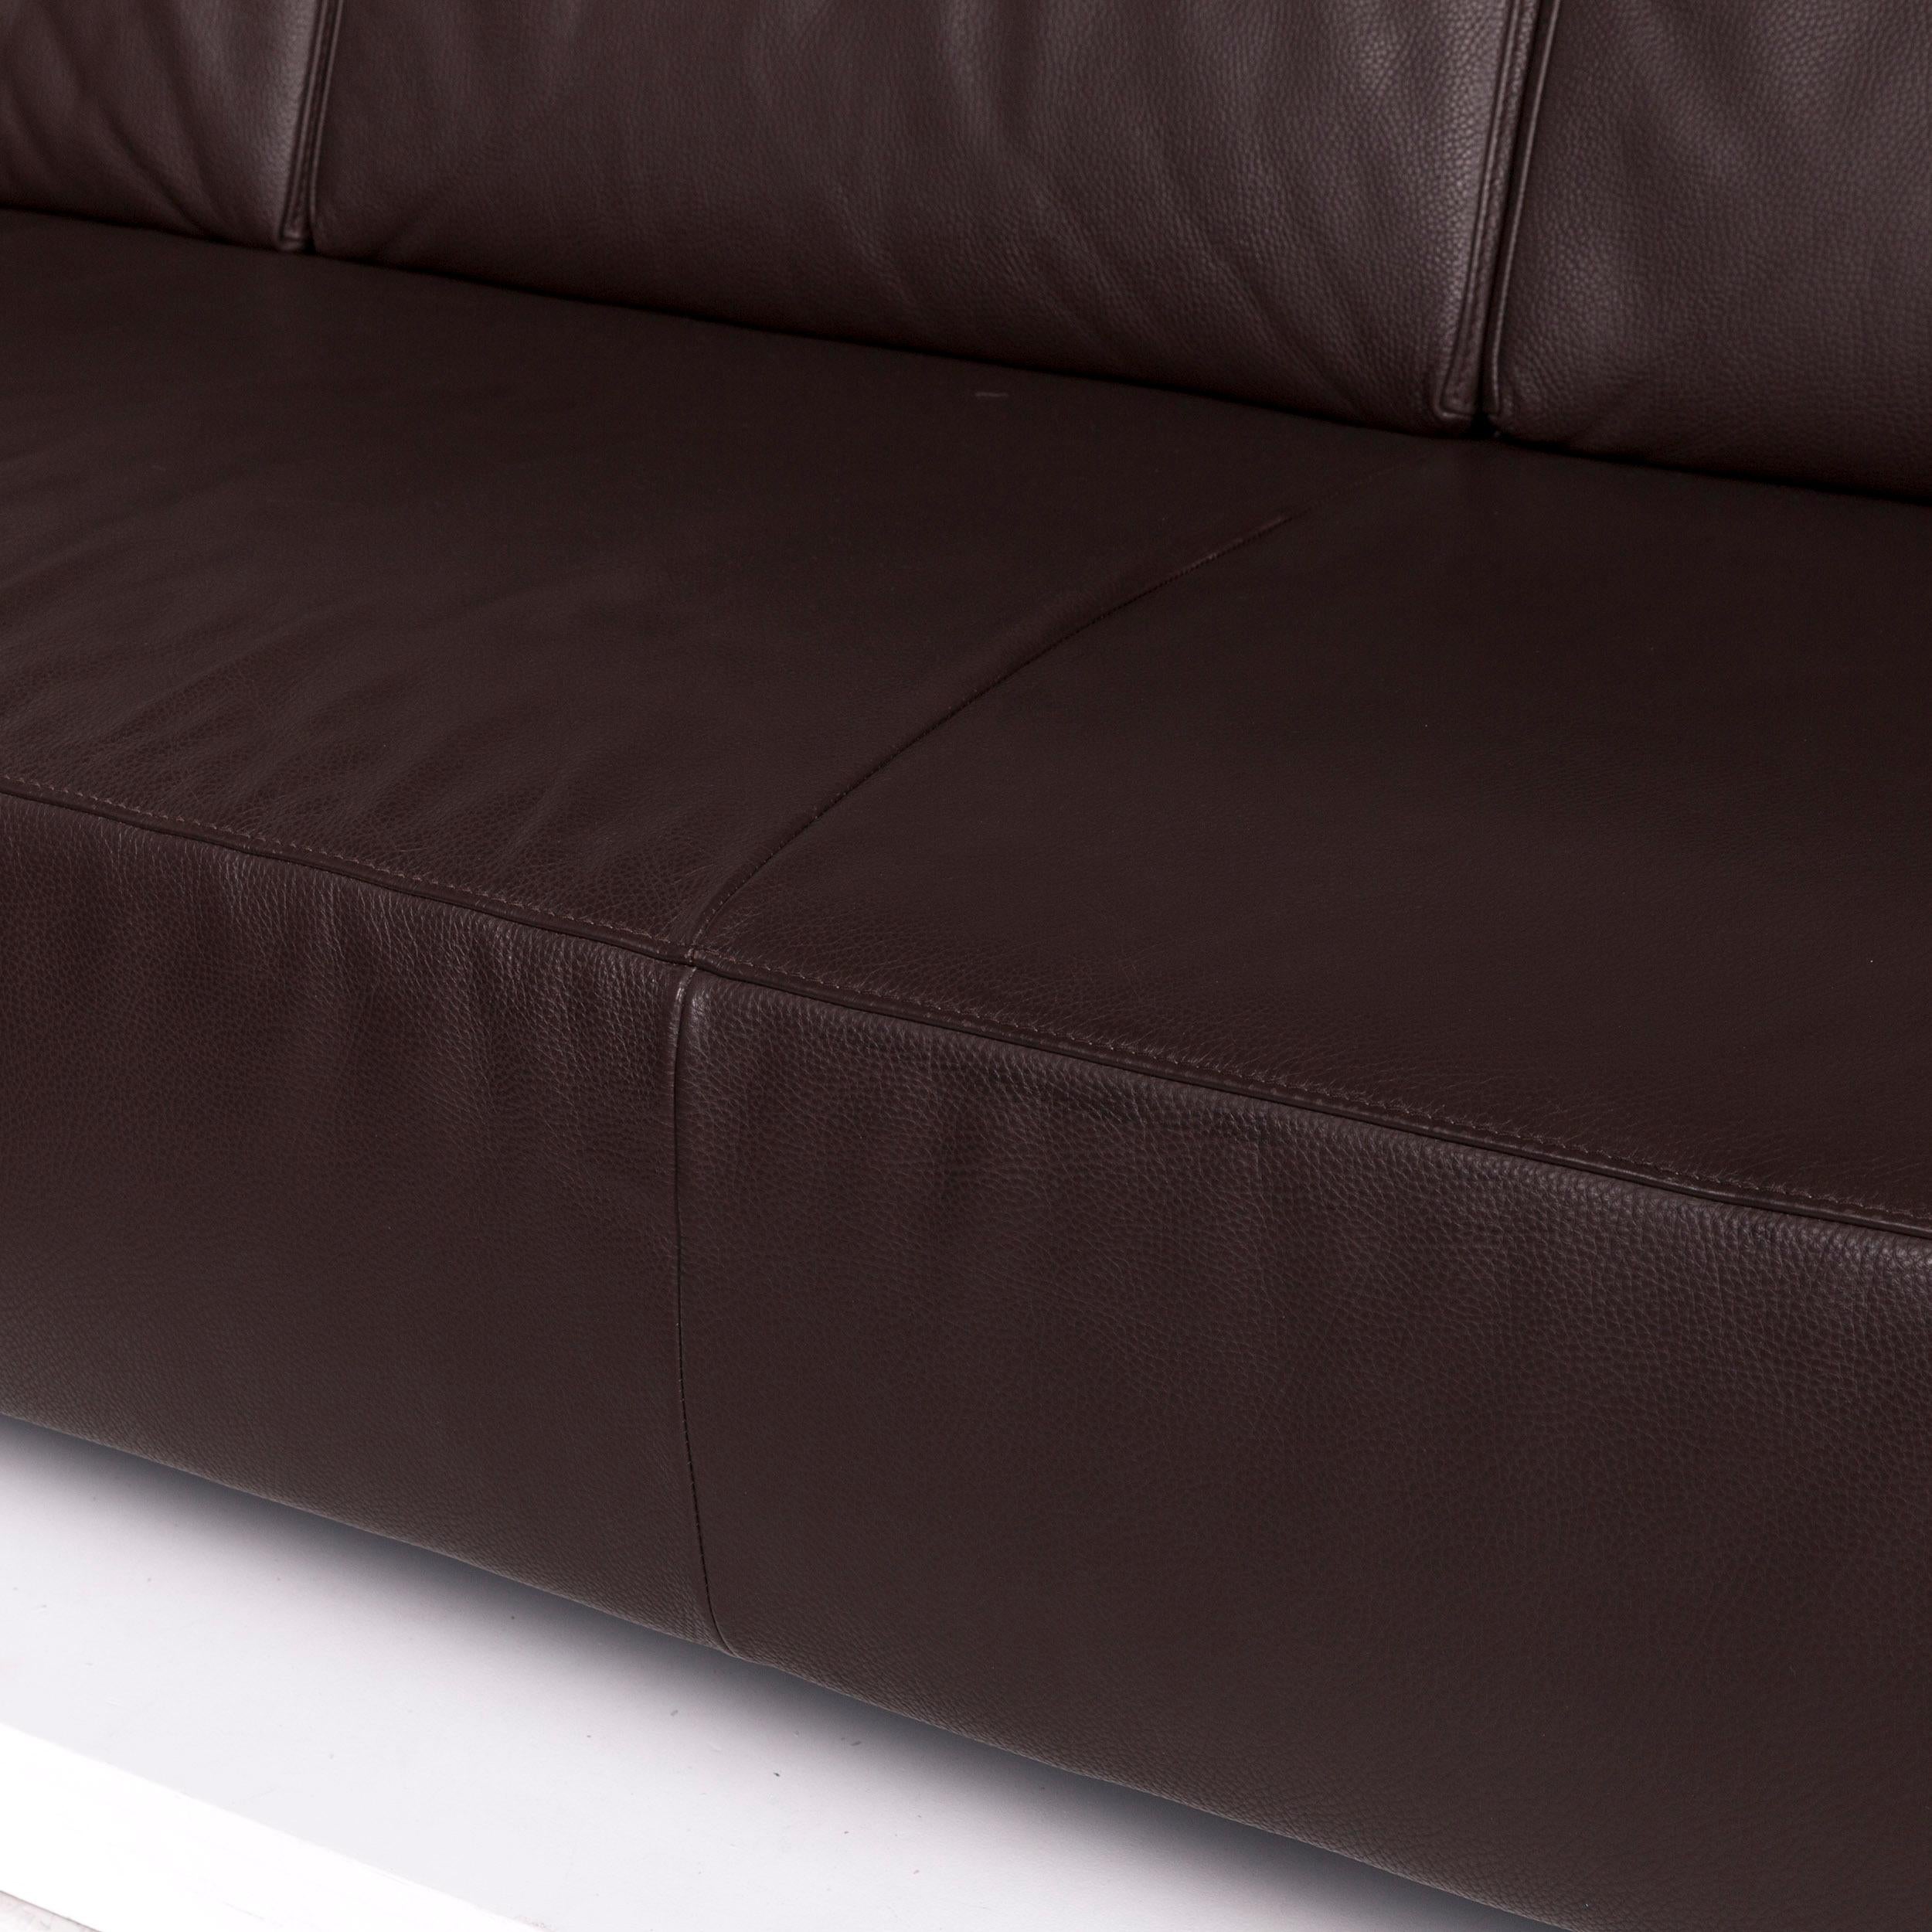 dark brown couch